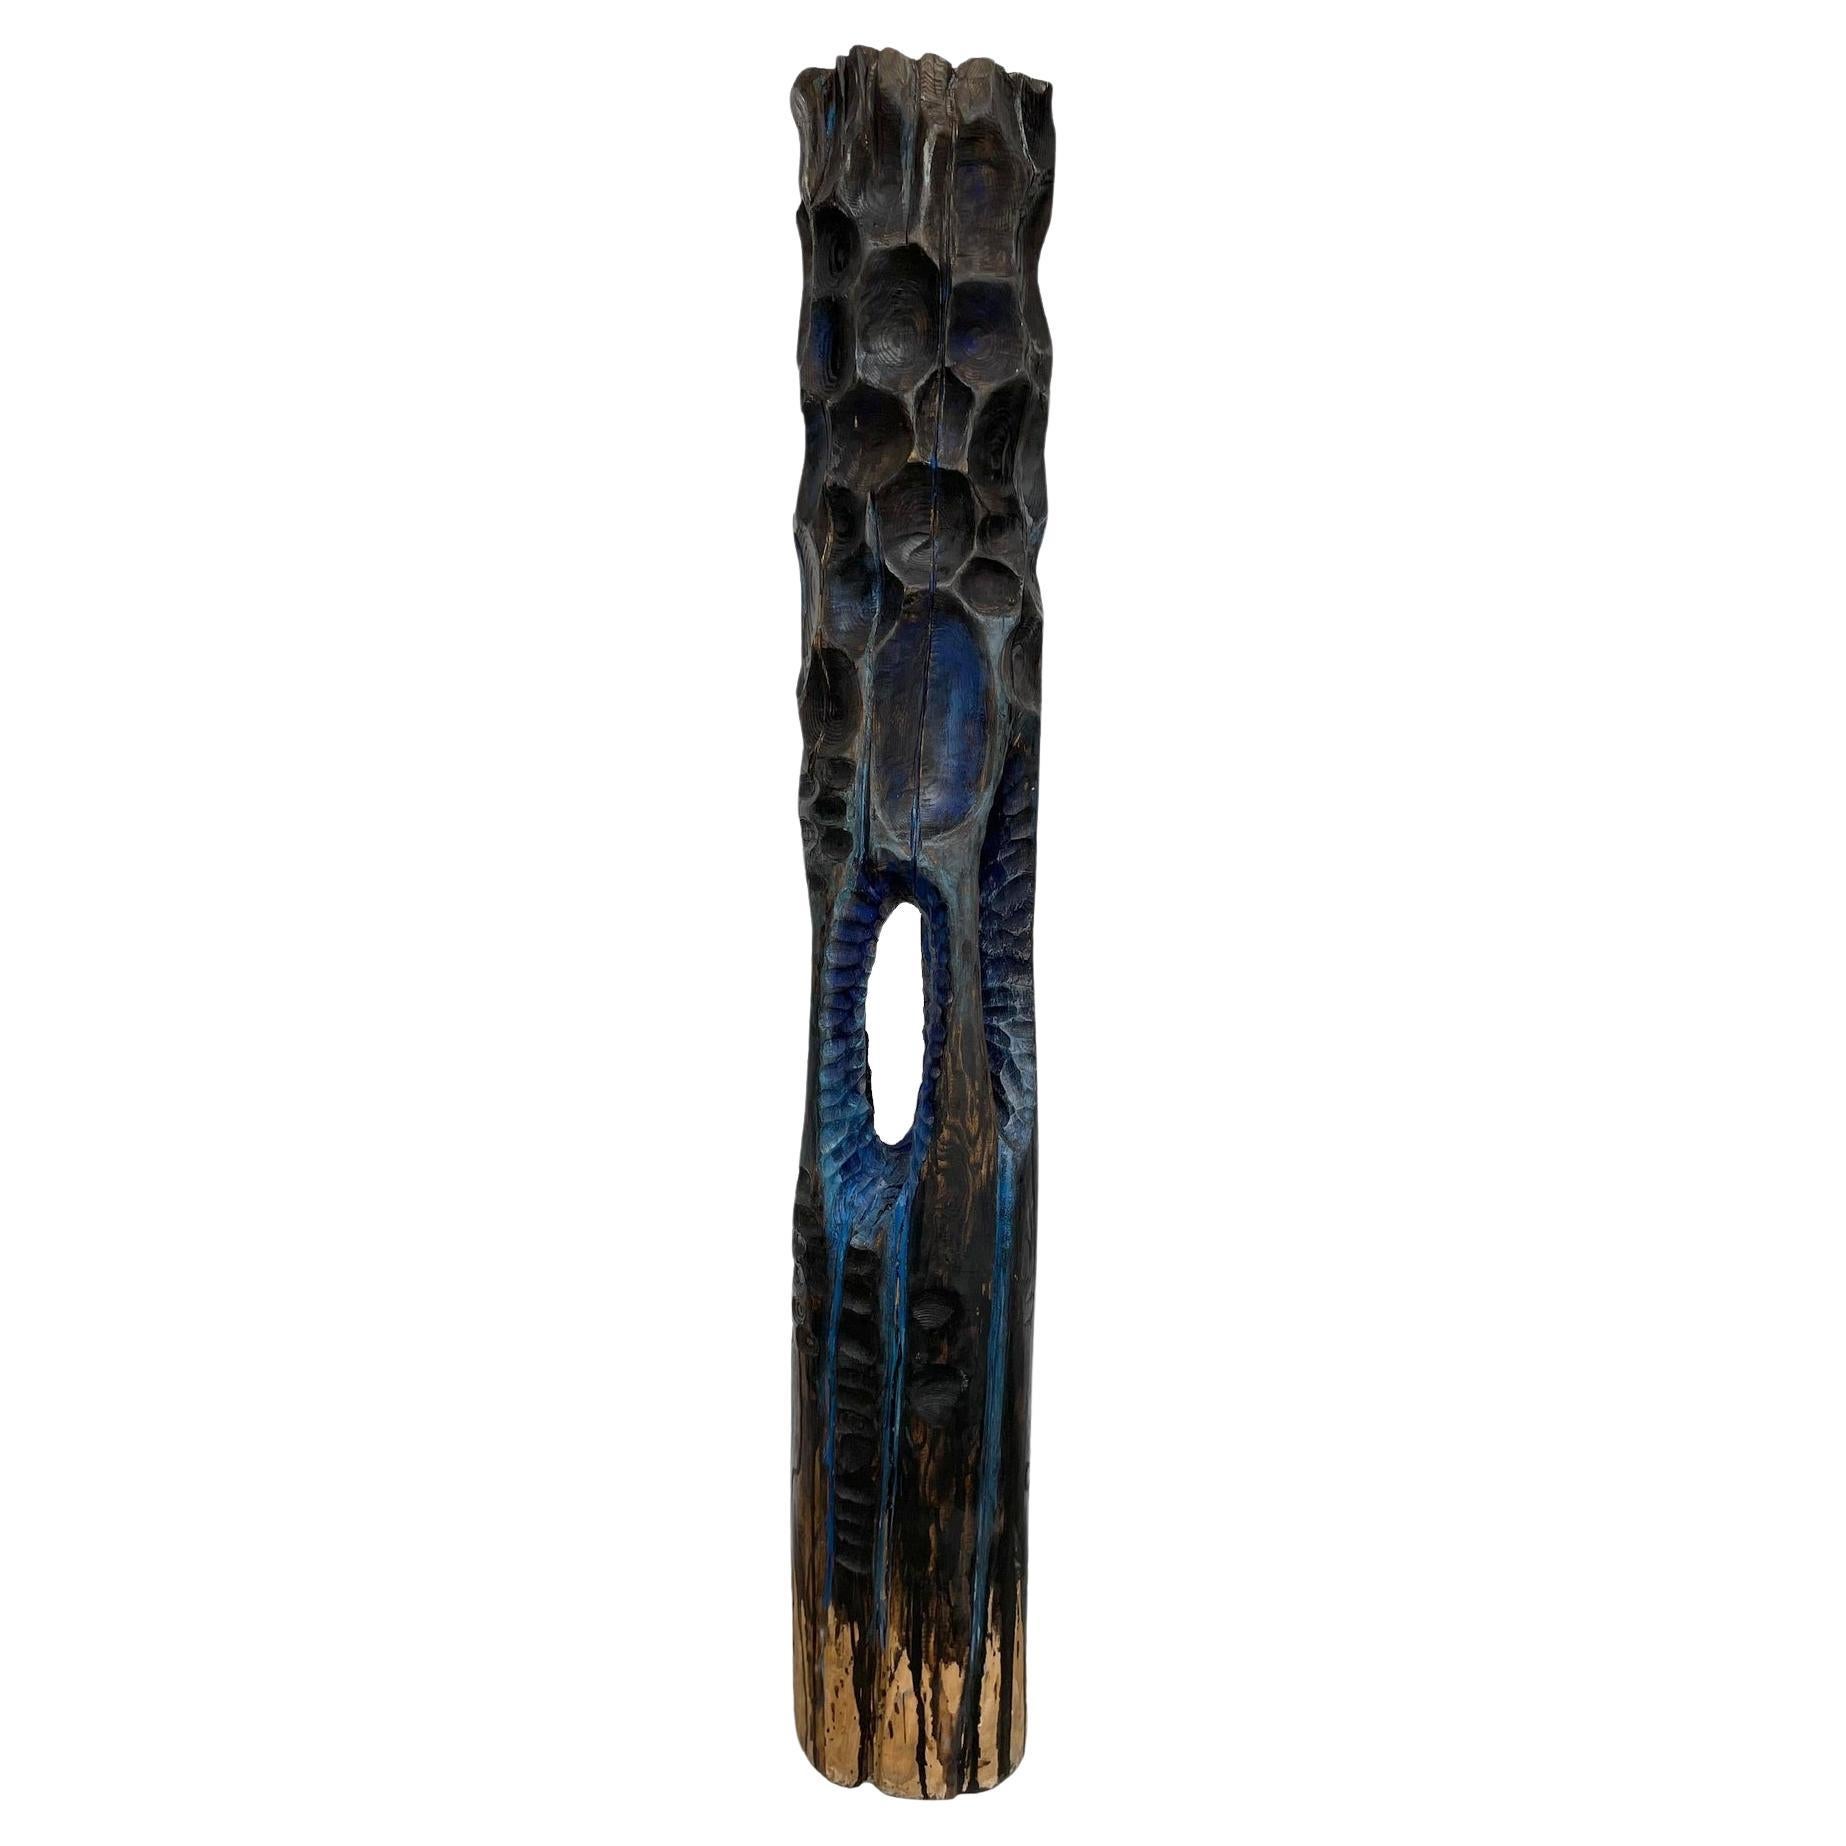 Escultura "Tótem" de madera patinada azul